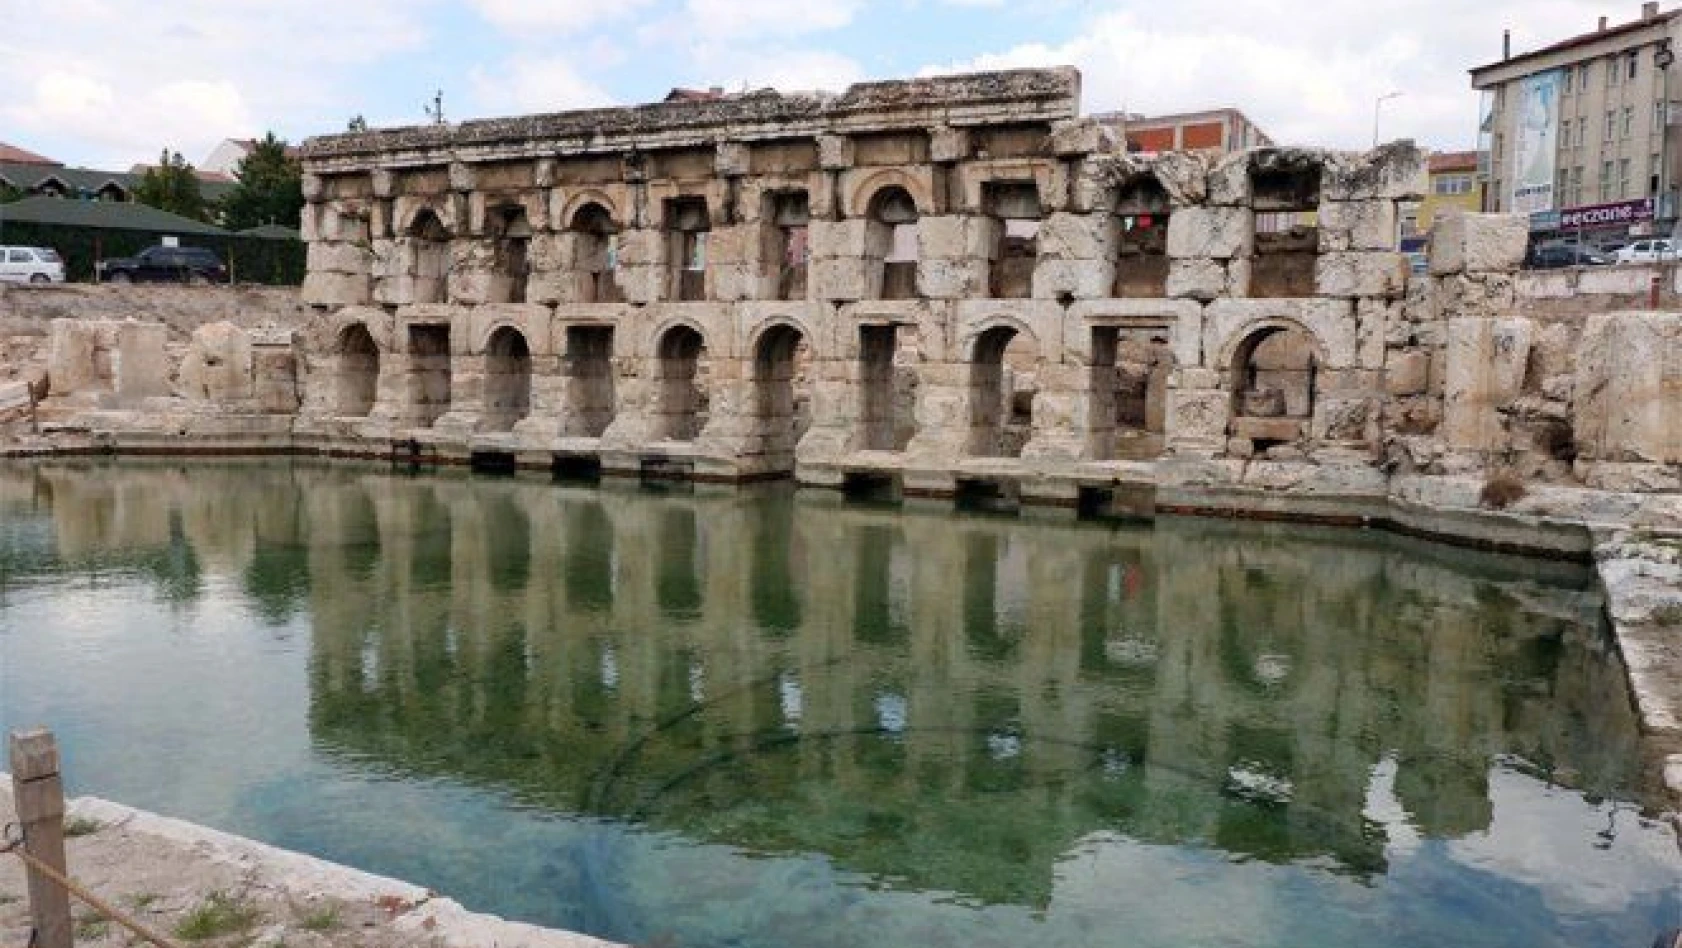 2 bin yıllık tarihi Roma Hamamı'nda arkeolojik kazılar sürüyor 